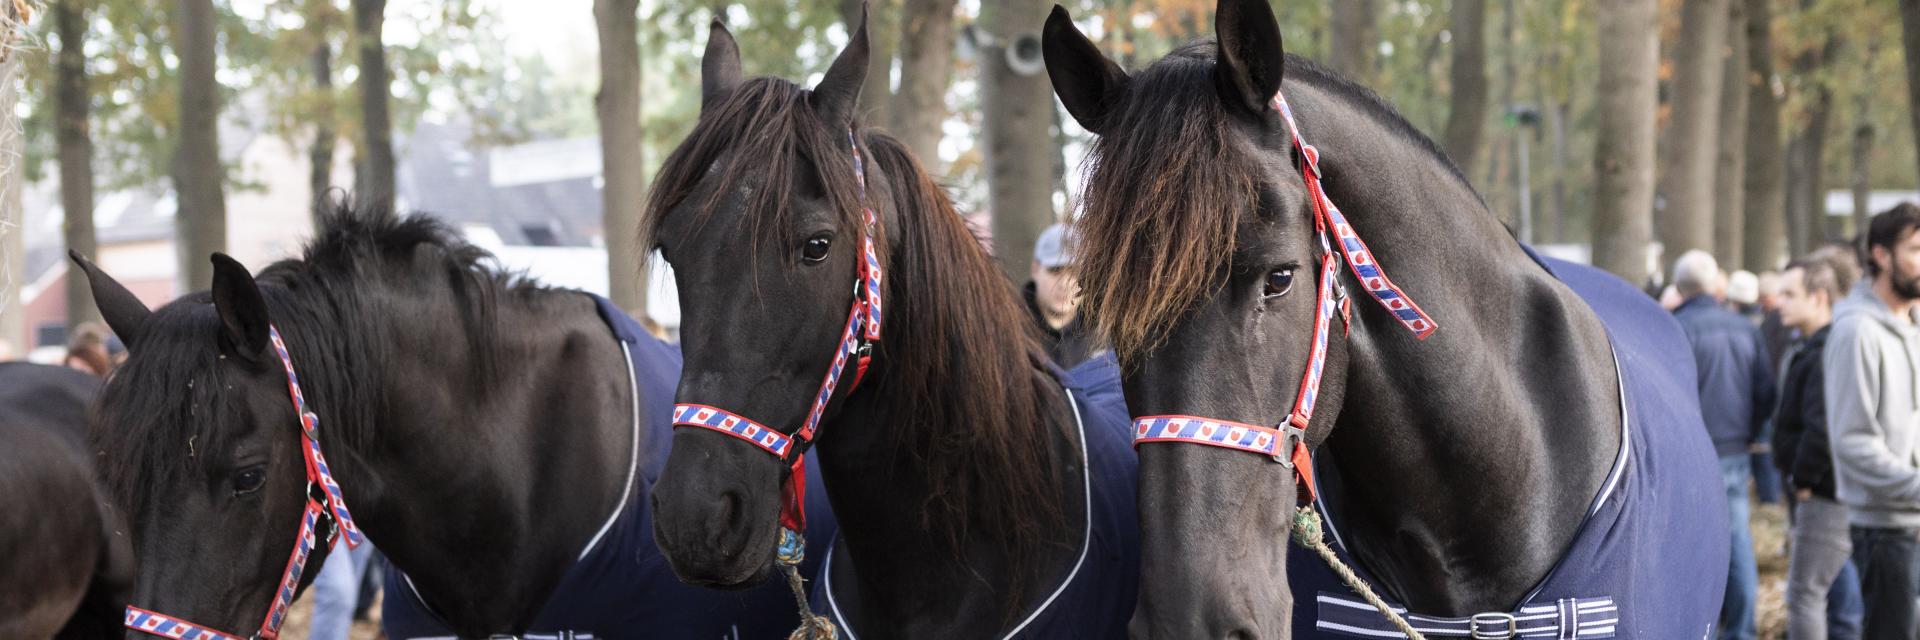 drie bruinzwarte paarden op de zuidlaardermarkt